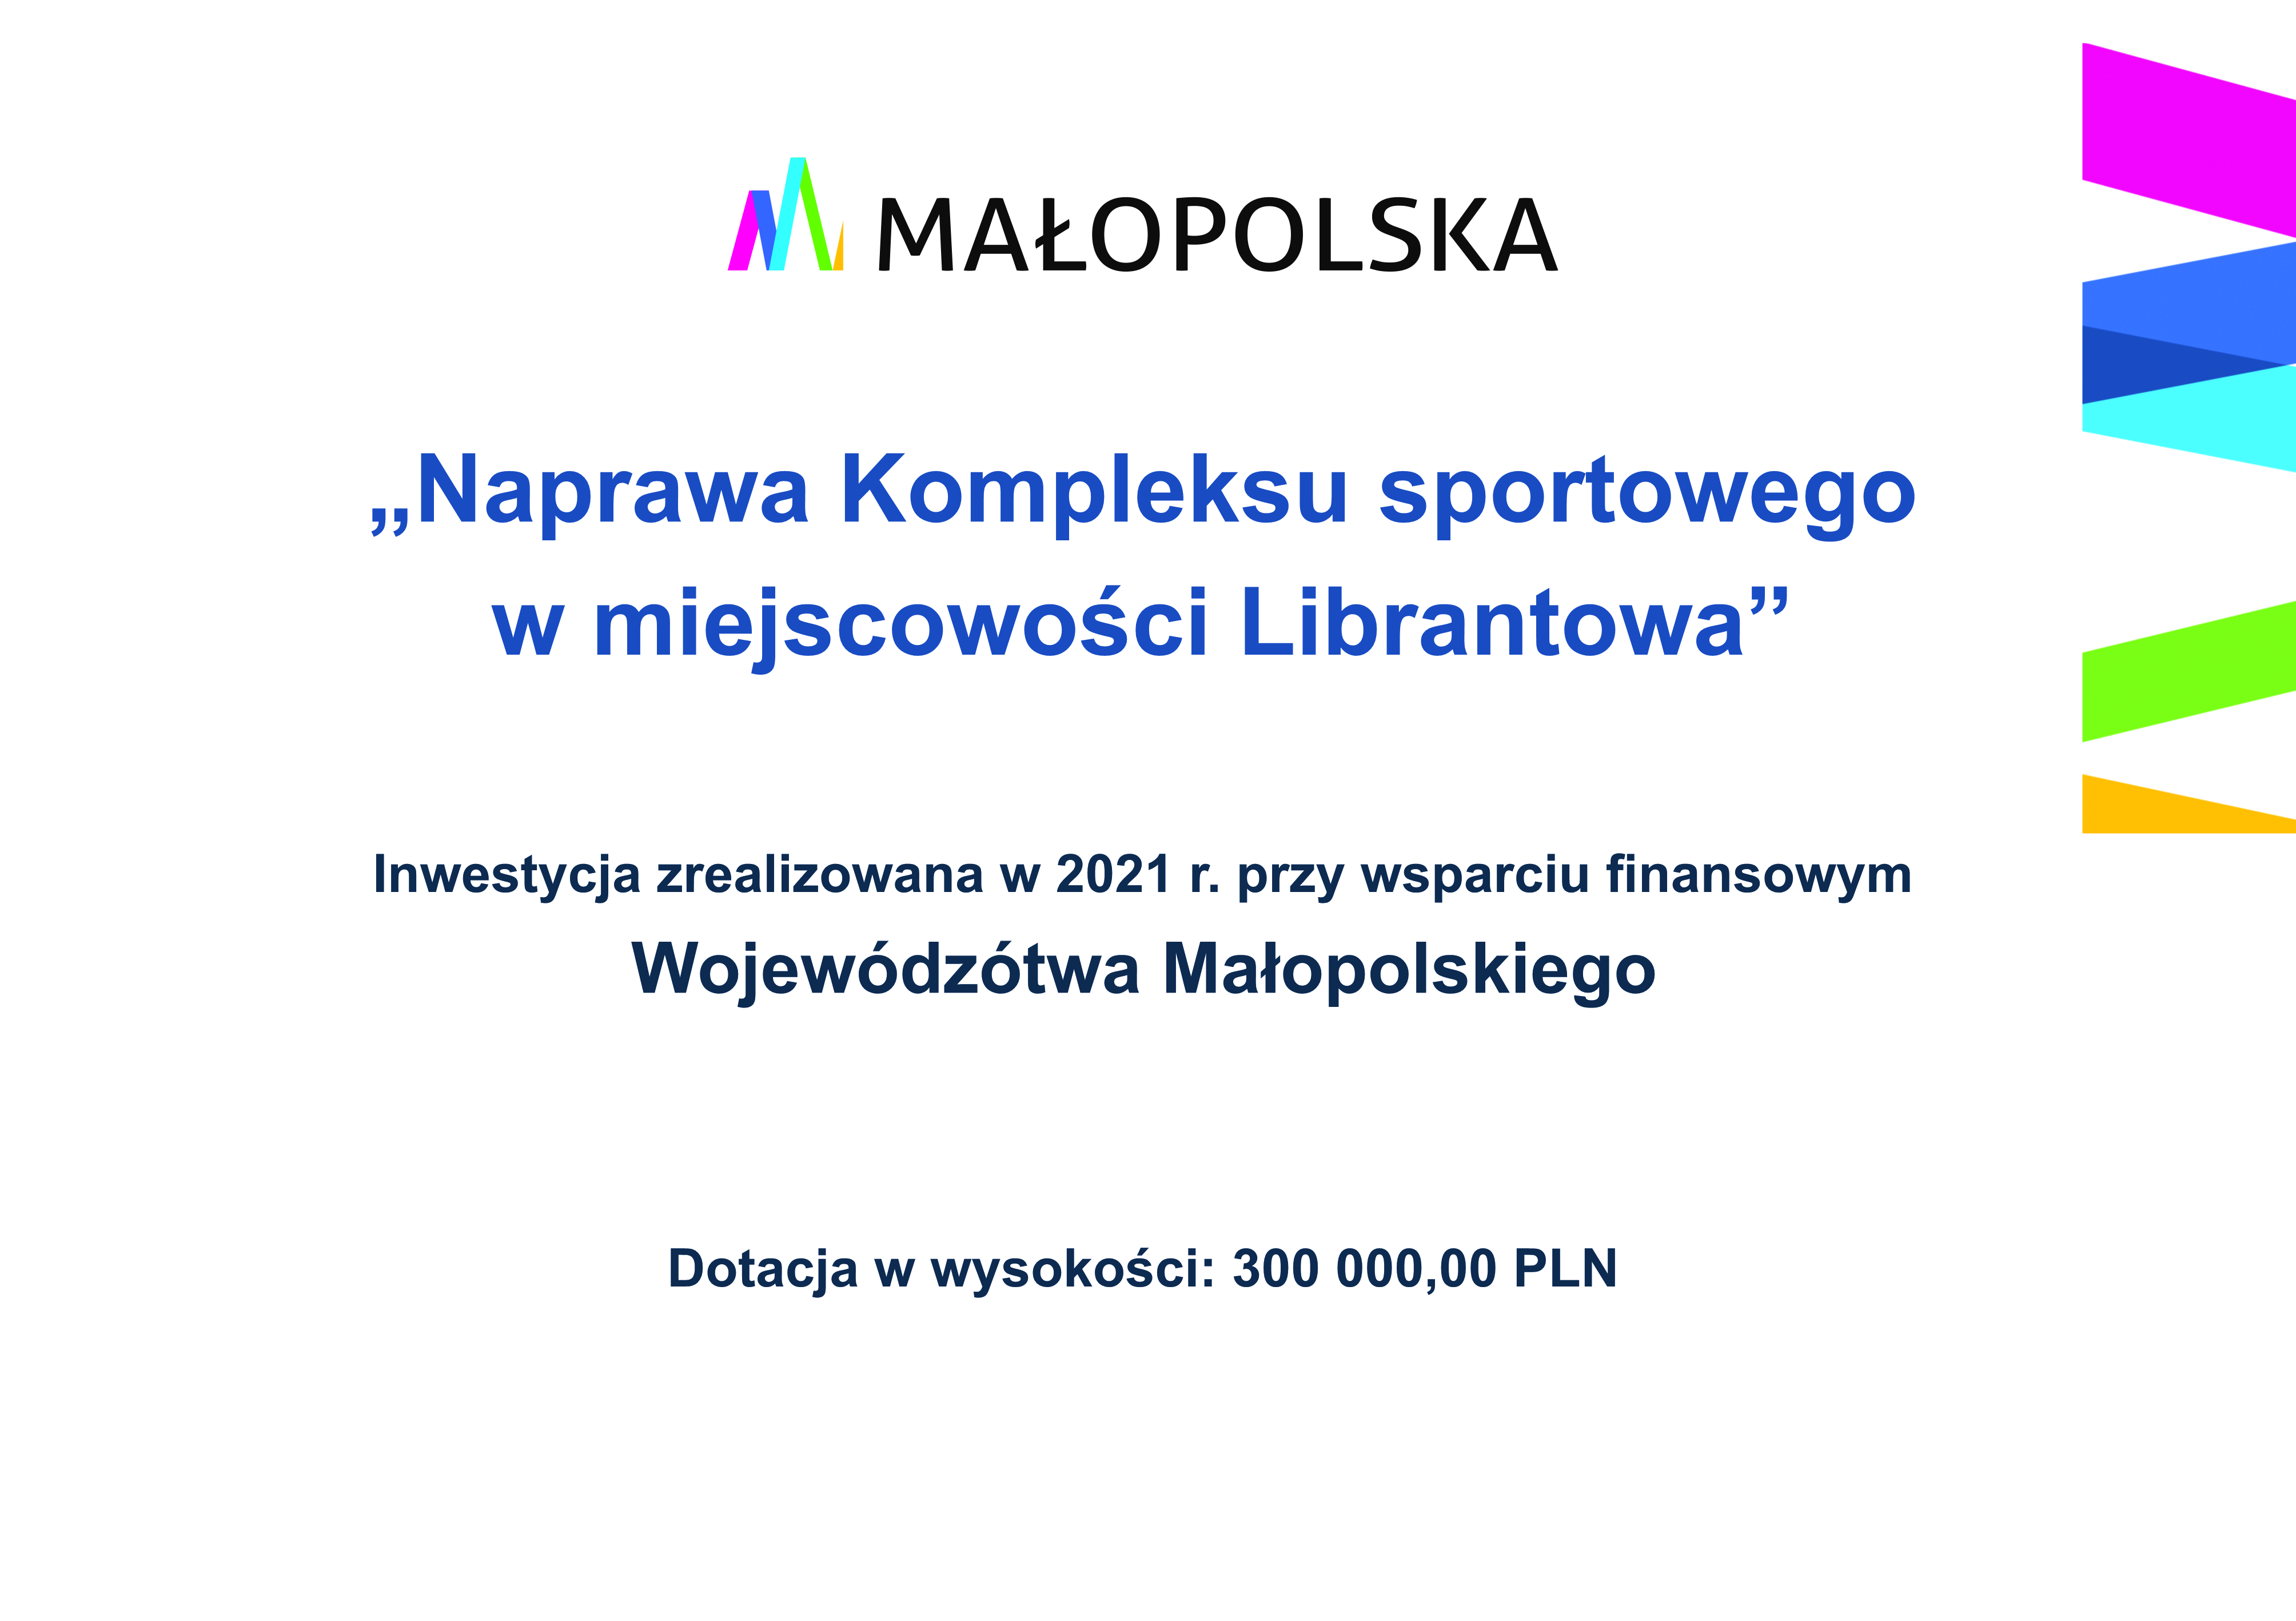 Tablica informacyjna: od góry logo Małopolska, poniżej napis: „Naprawa Kompleksu sportowego  w miejscowości Librantowa”  Inwestycja zrealizowana w 2021 r. przy wsparciu finansowym  Wojewódzótwa Małopolskiego  Dotacja w wysokości: 300 000,00 PLN 